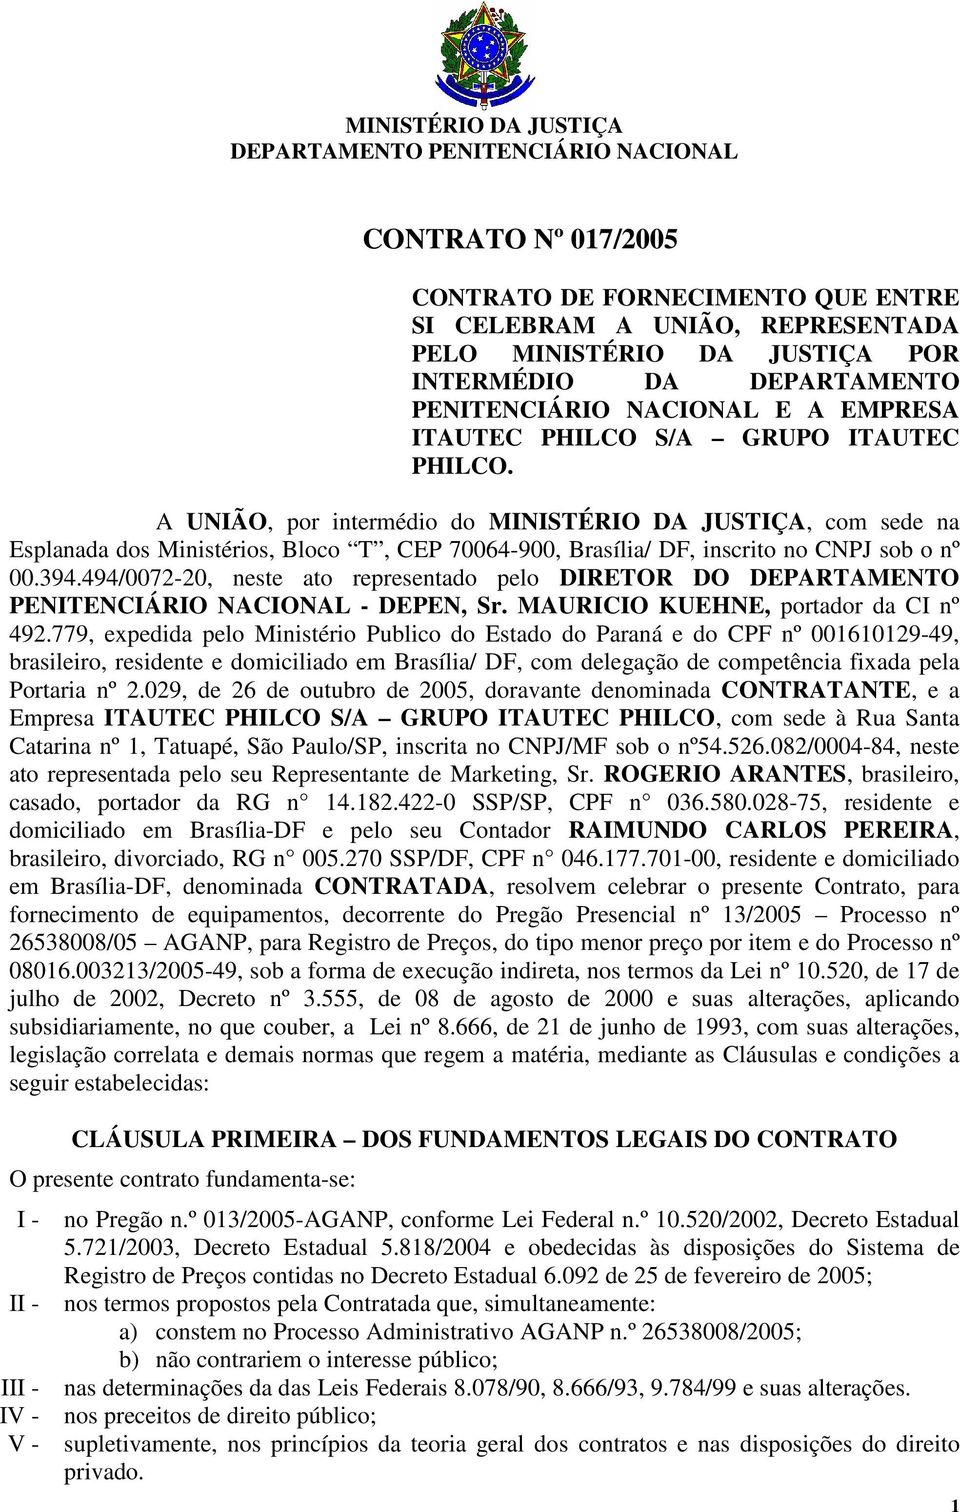 A UNIÃO, por intermédio do MINISTÉRIO DA JUSTIÇA, com sede na Esplanada dos Ministérios, Bloco T, CEP 70064-900, Brasília/ DF, inscrito no CNPJ sob o nº 00.394.